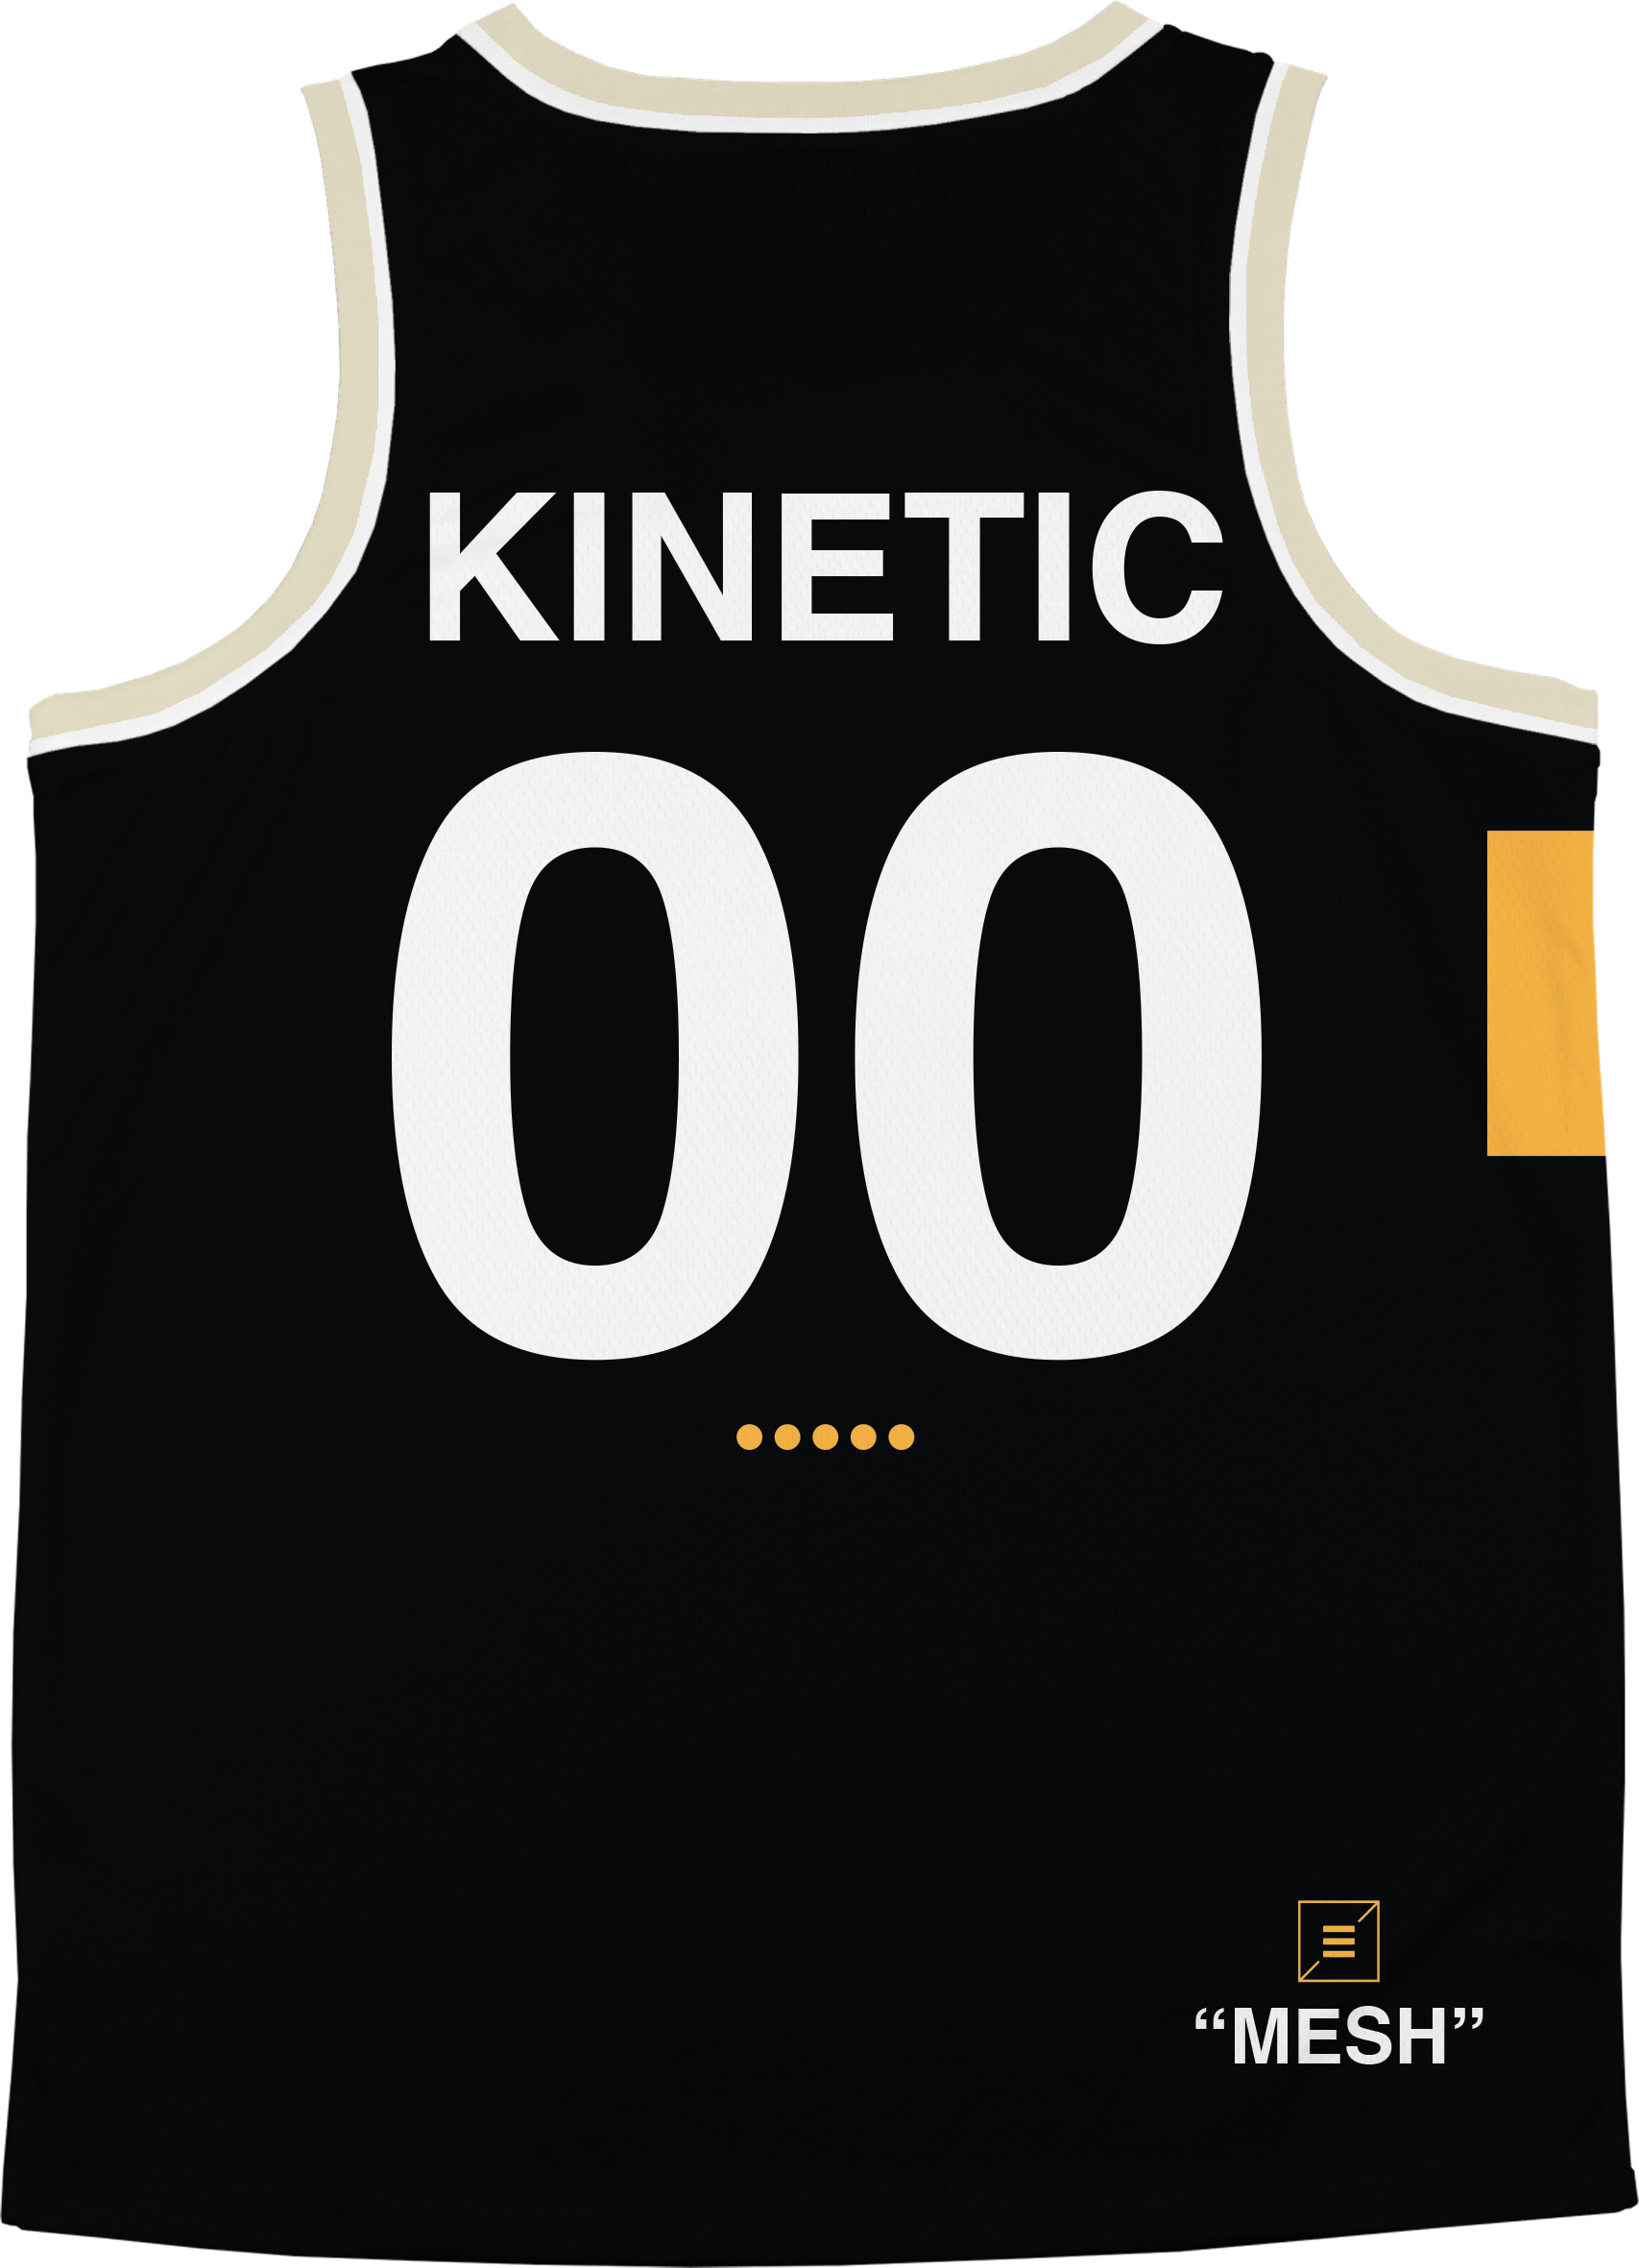 Acacia - OFF-MESH Basketball Jersey - Kinetic Society